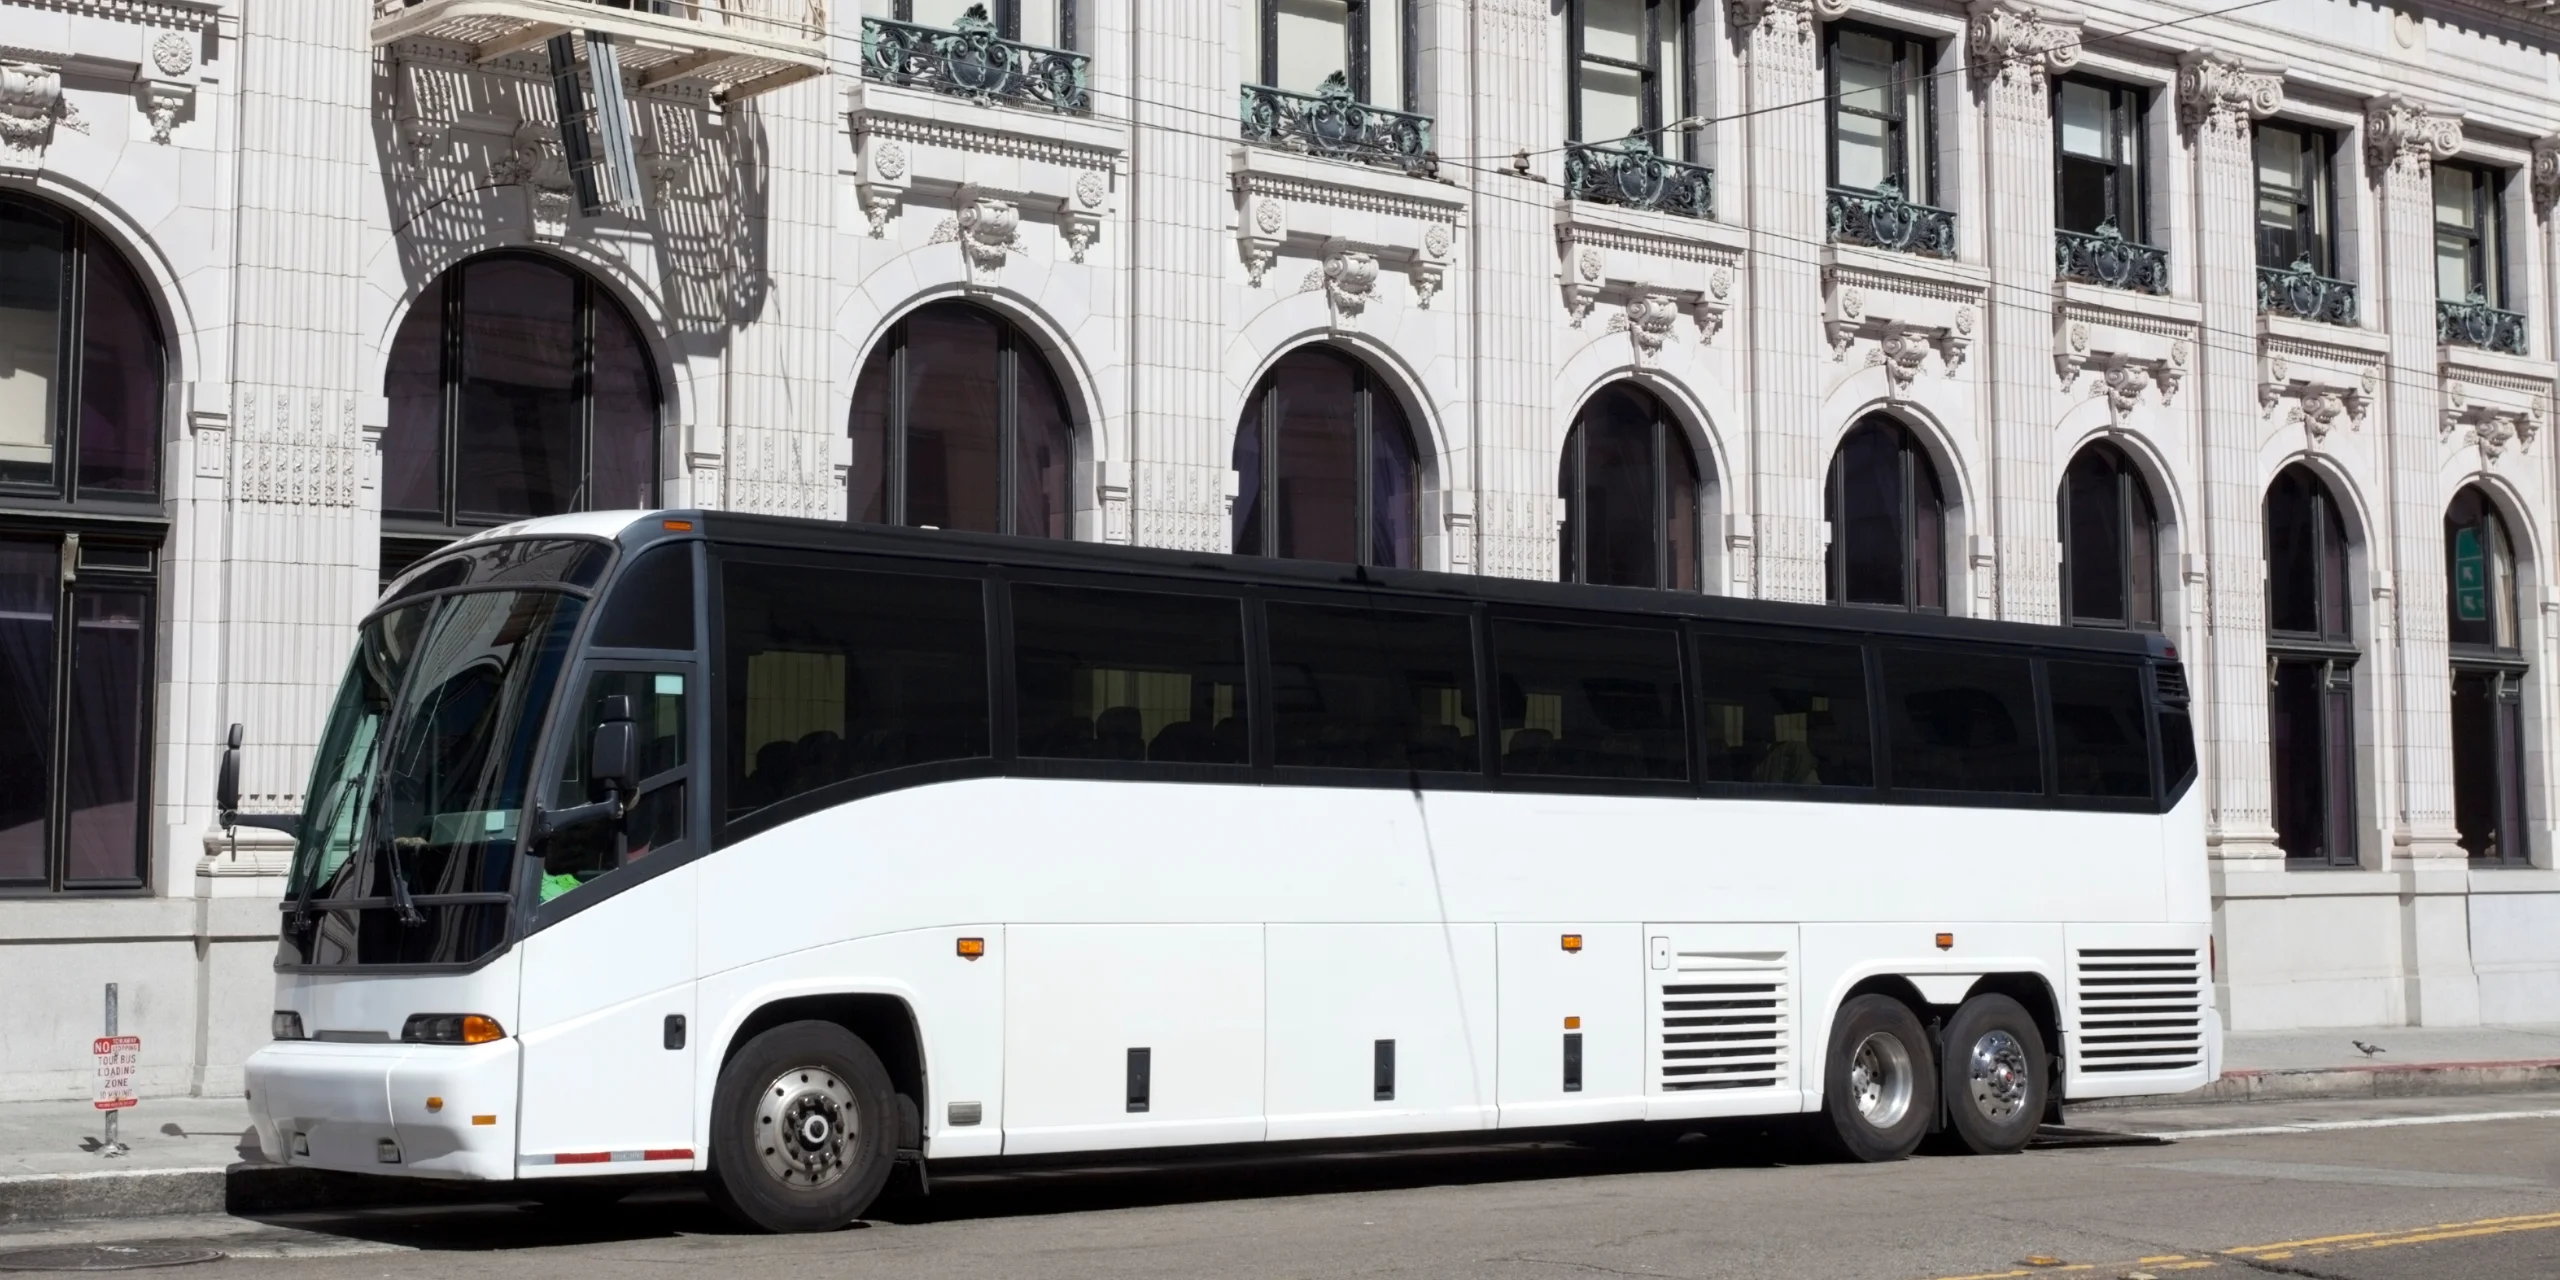 A Charter Empire Bus